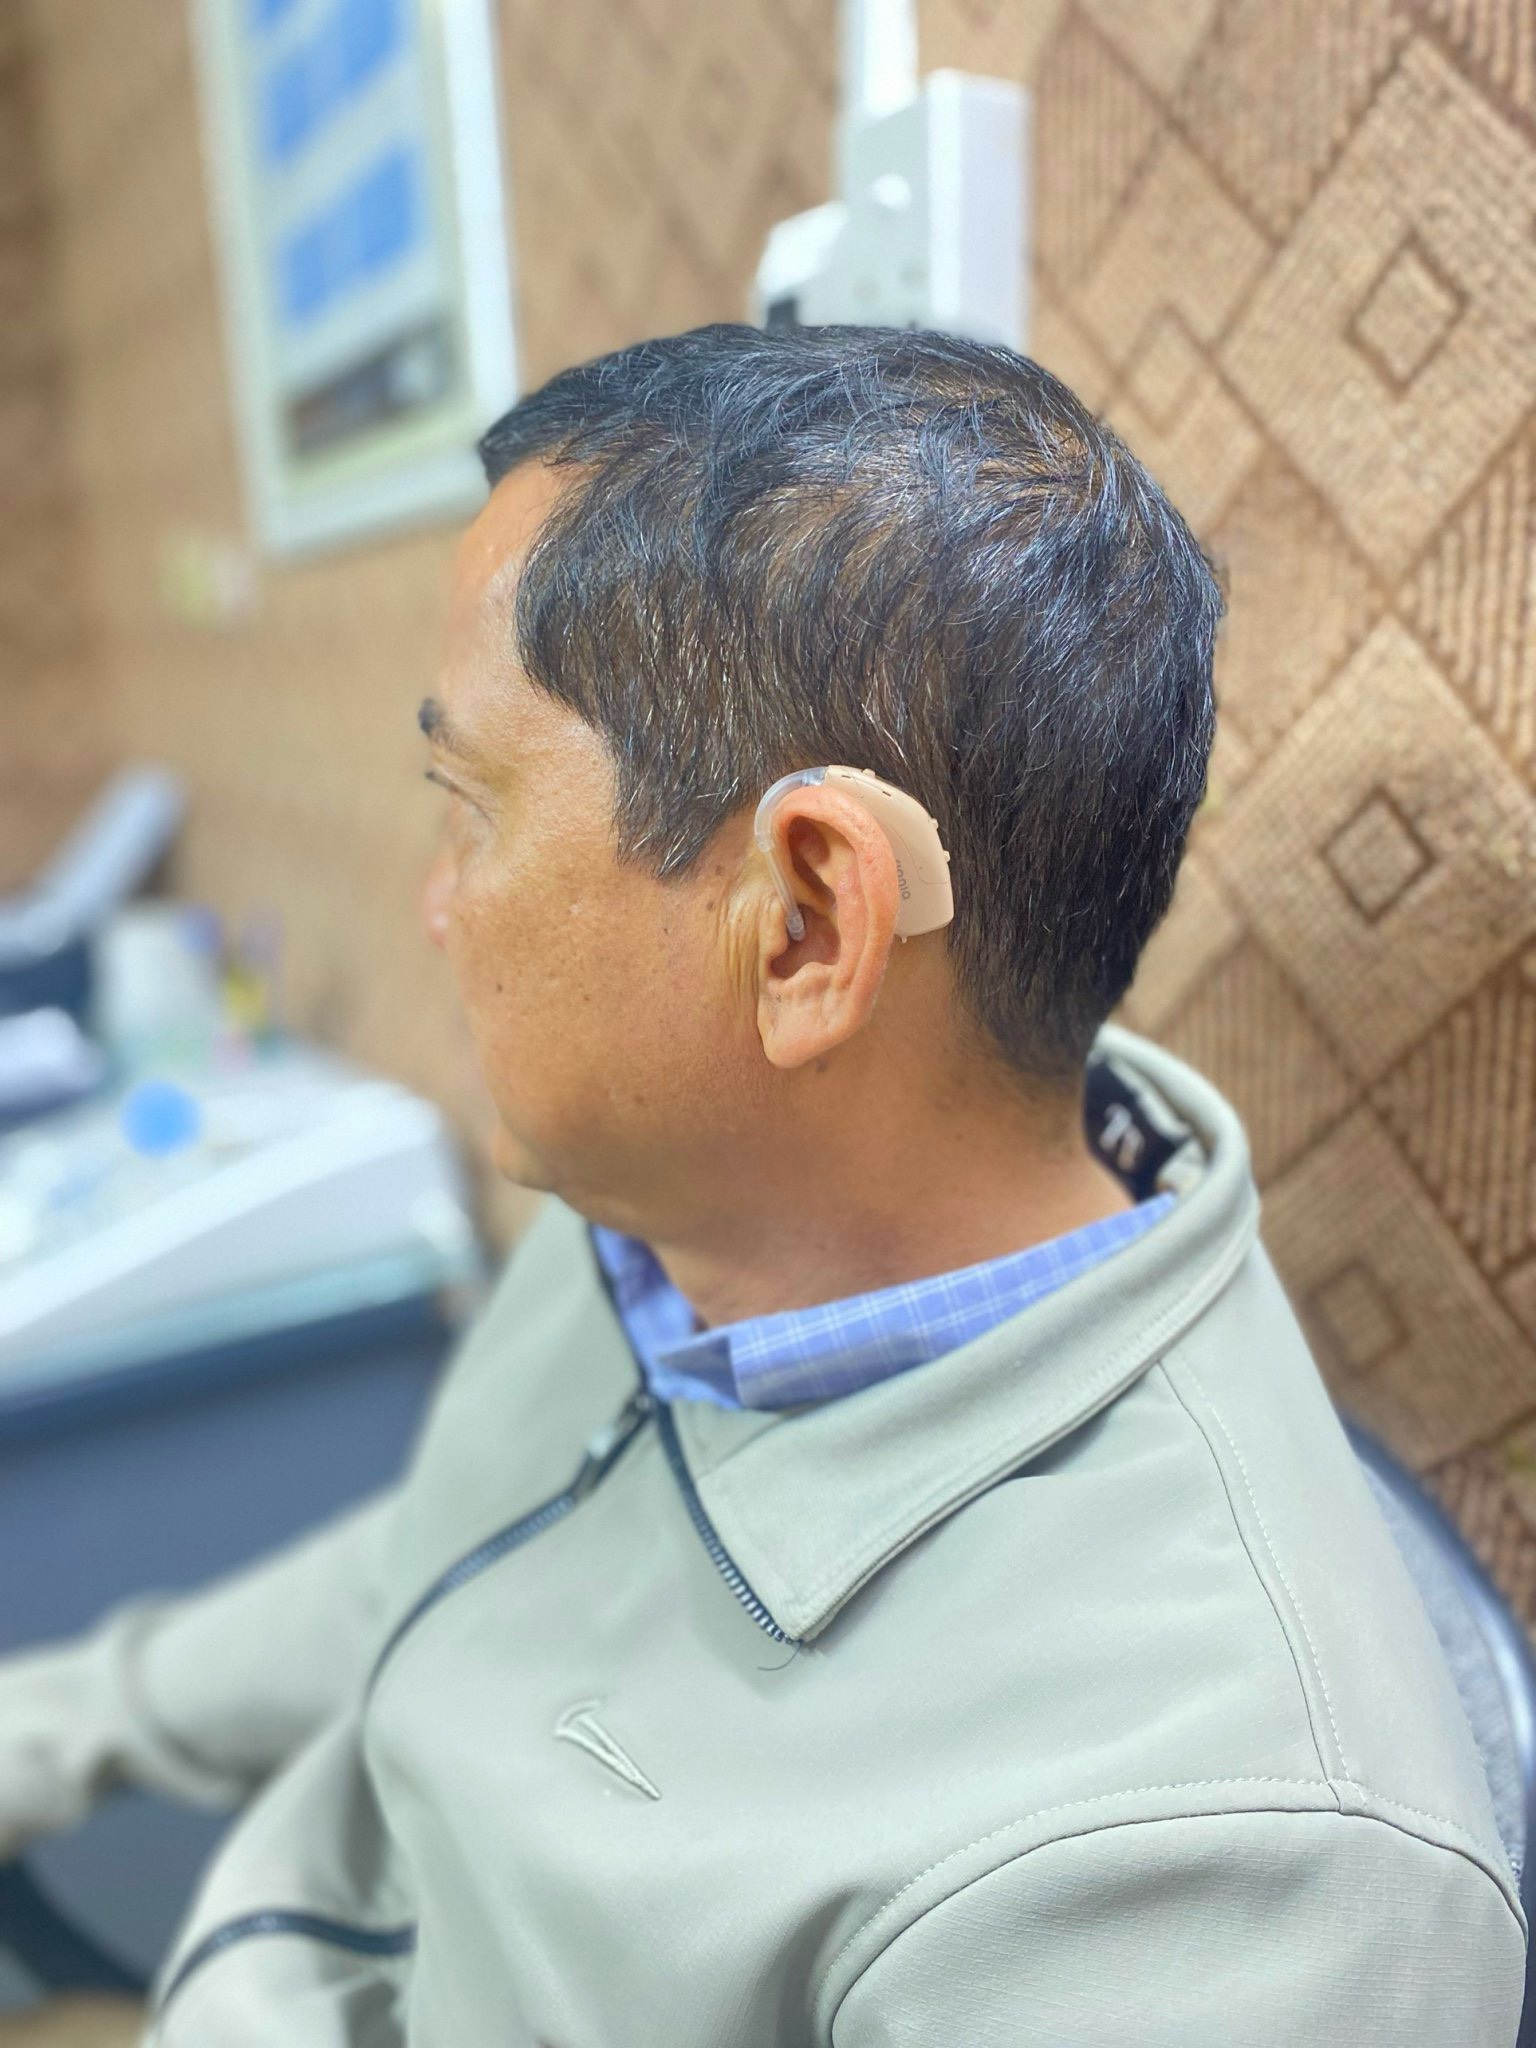 Máy trợ thính công suất lớn dành cho người nghe kém mức độ nặng - sâu